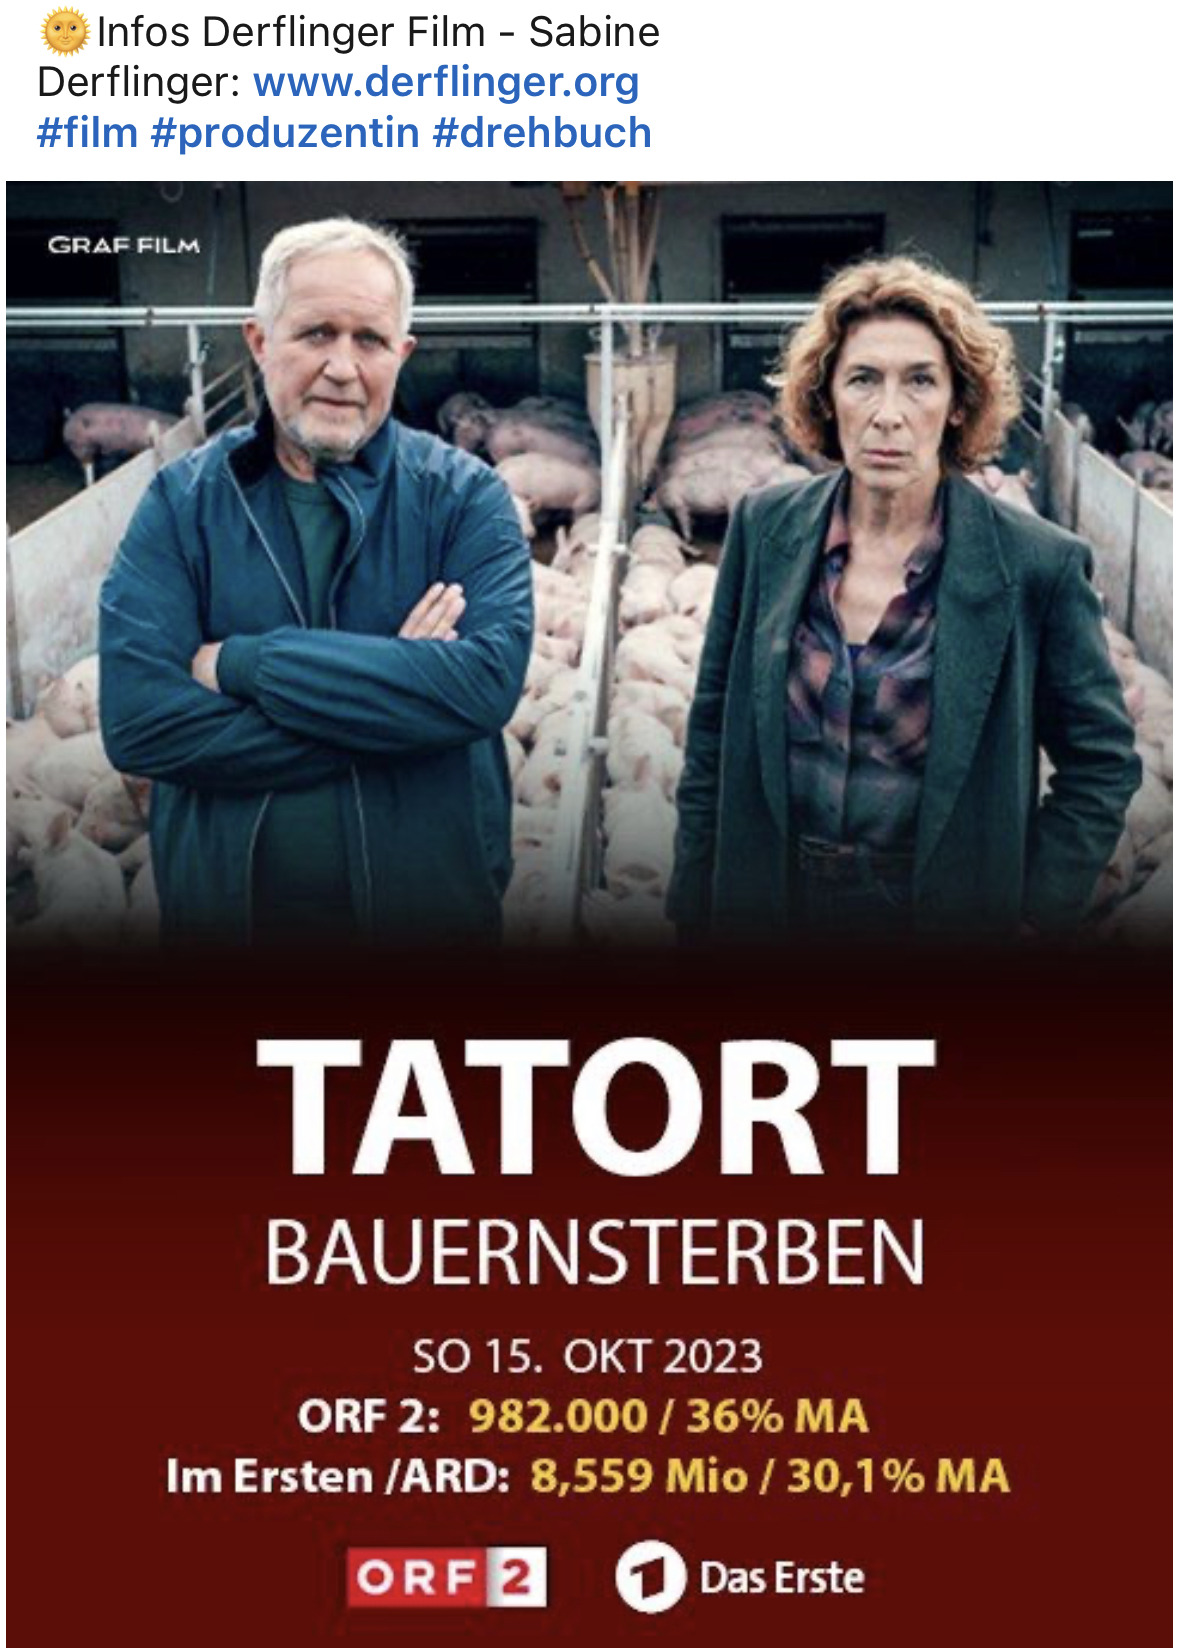 TATORT BAUERNSTERBEN 15.10.2023 ORF2 ARD